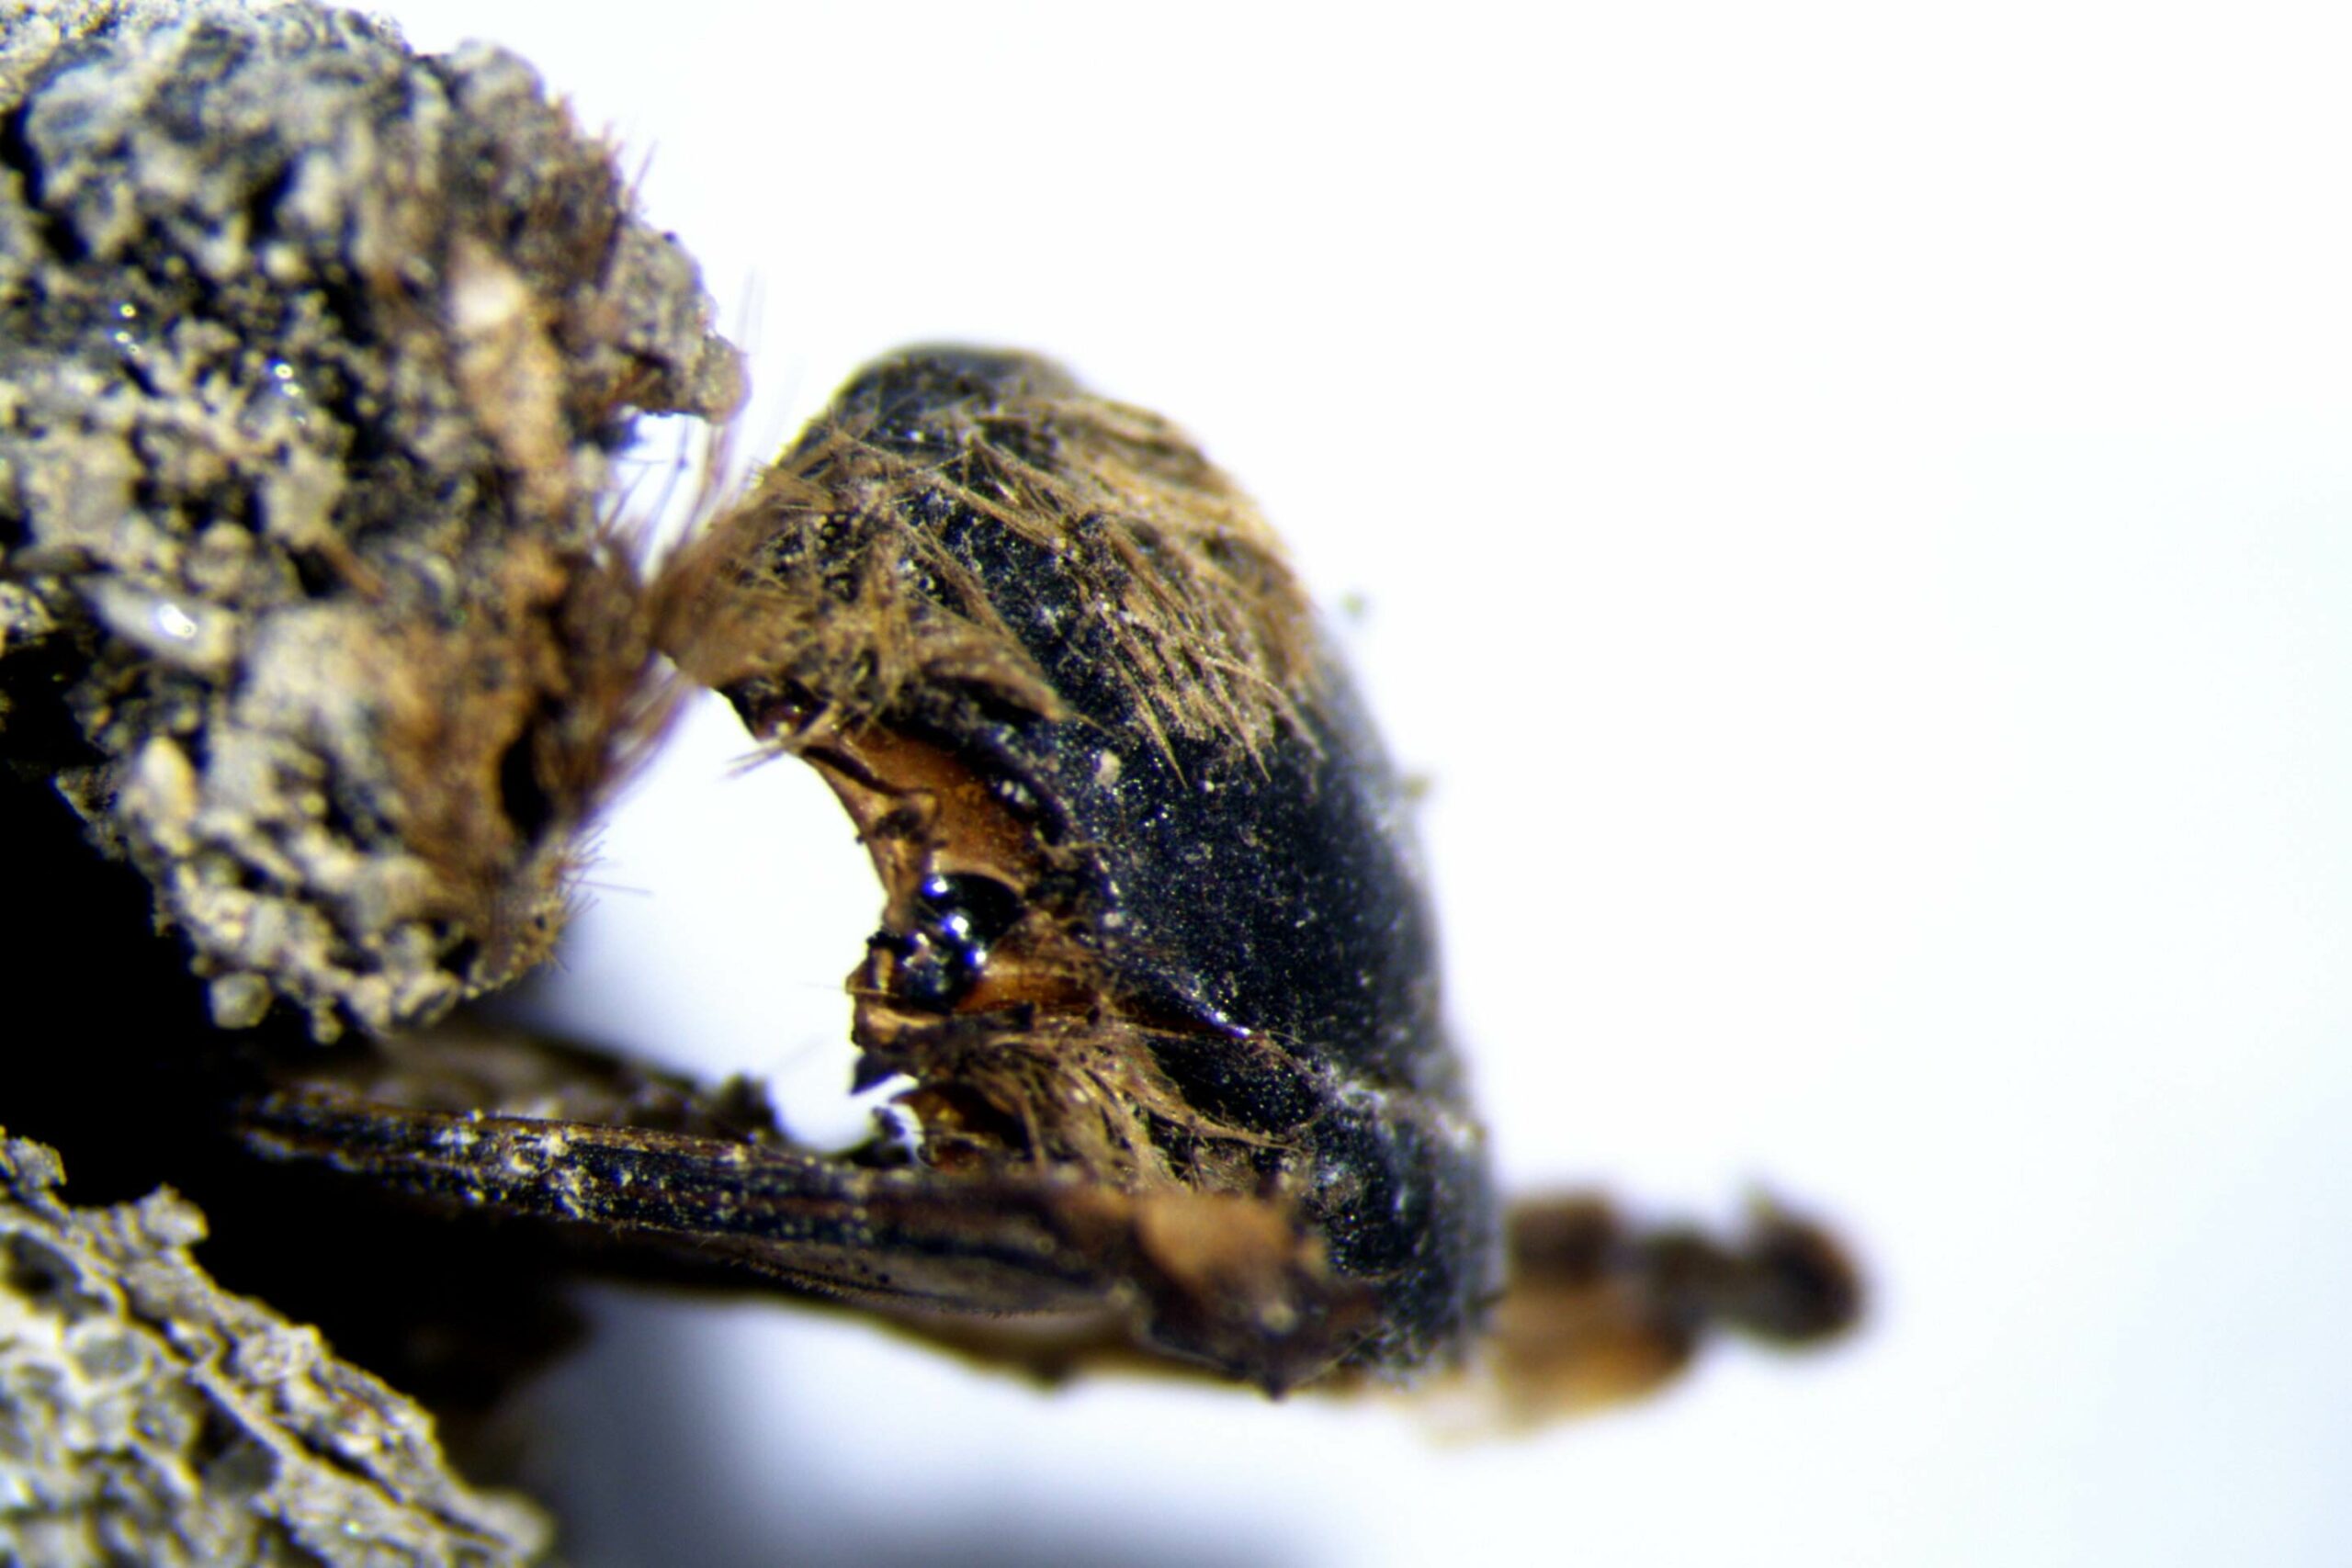 Atusan tawon mumi ing jero kepompong wis ditemokake ing pesisir kidul-kulon Portugal, ing situs paleontologi anyar ing pesisir Odemira.